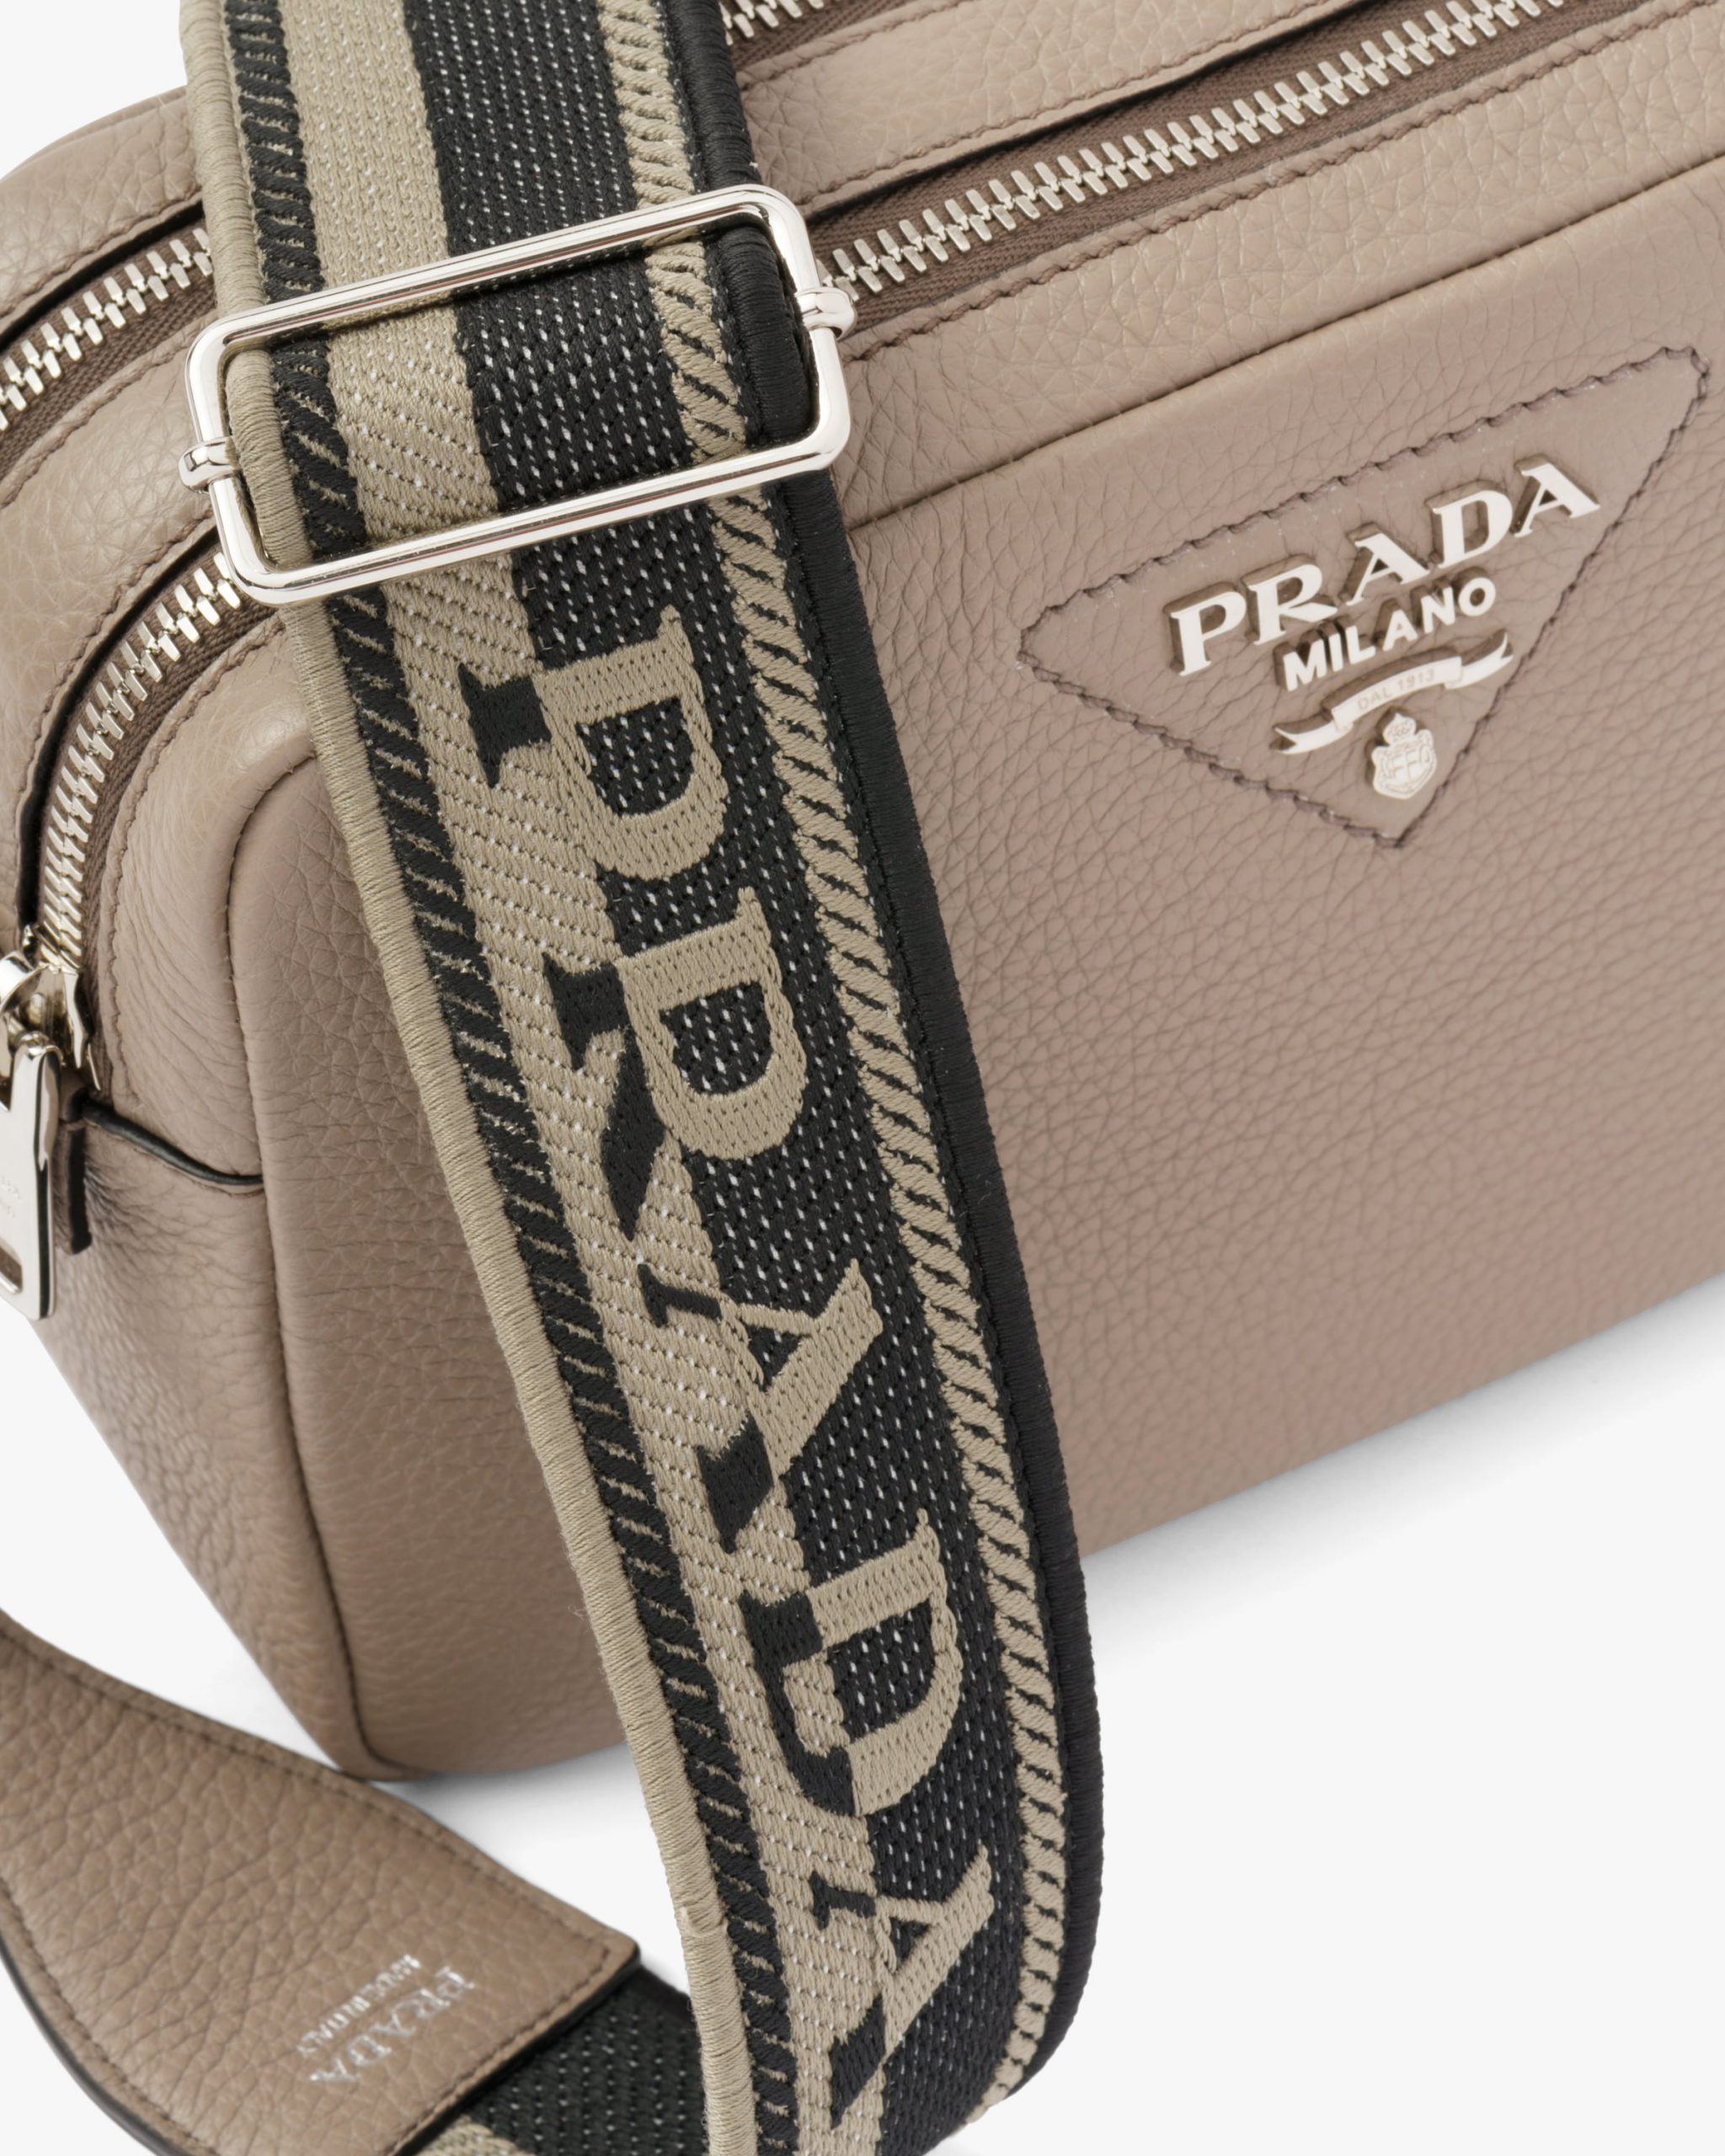 Clay Gray Prada Flou leather bag with shoulder strap - Fake Prada Store